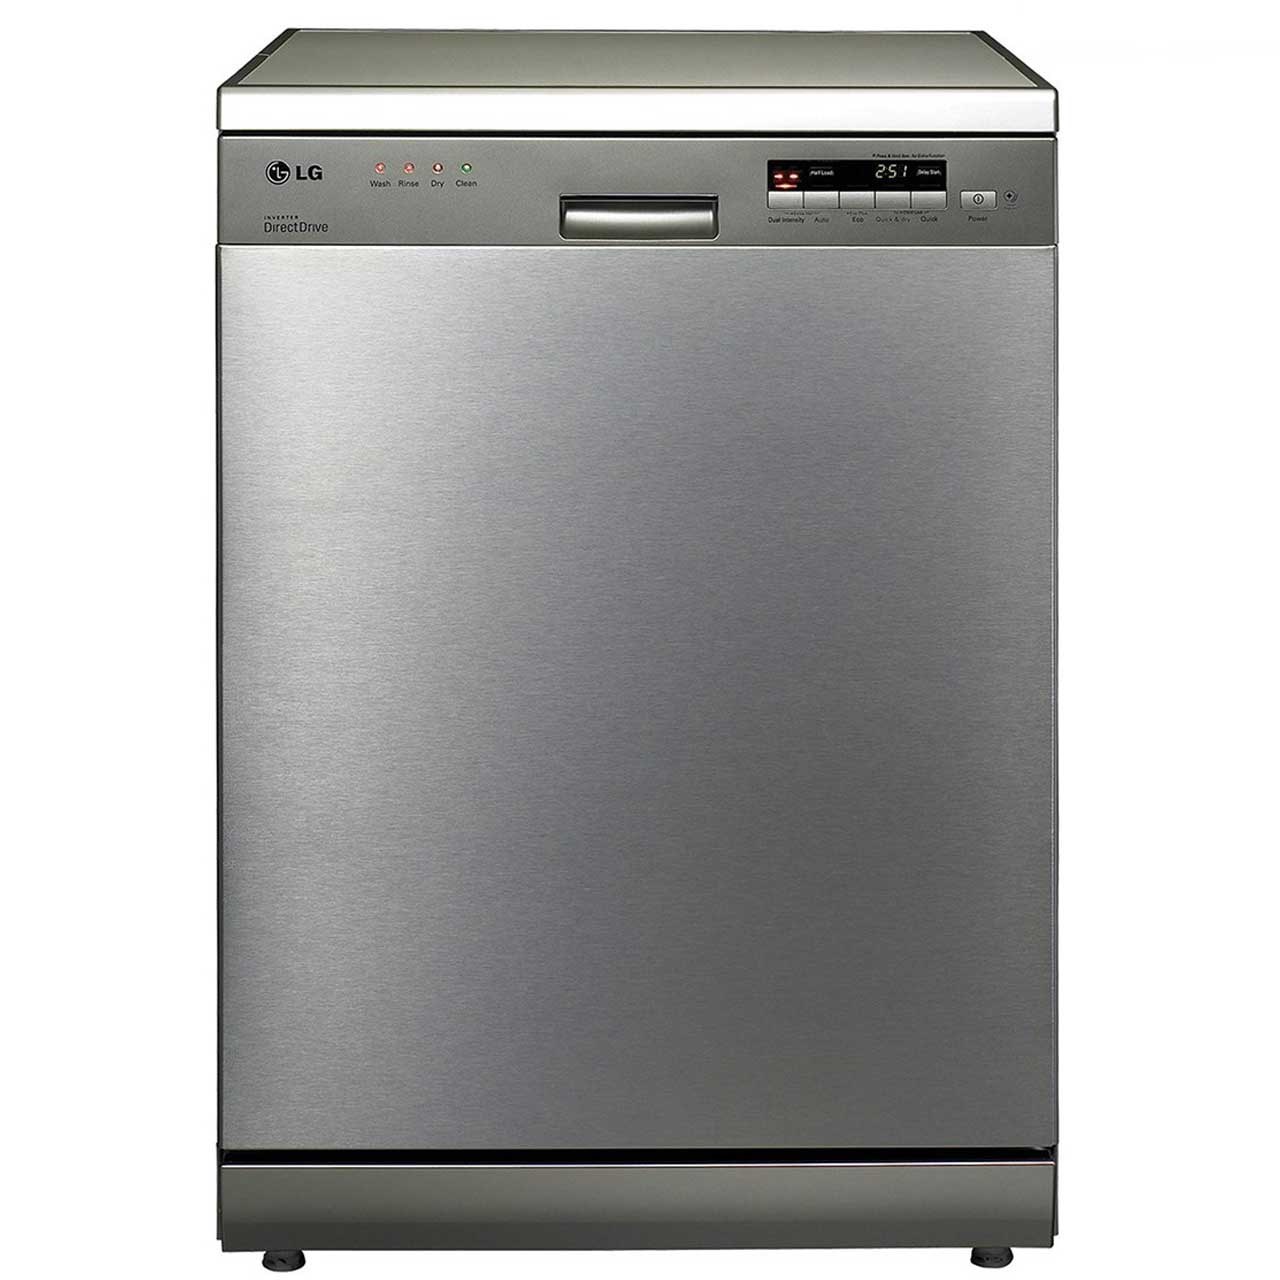 نکته خرید - قیمت روز ماشین ظرفشویی ال جی مدل DE24 خرید